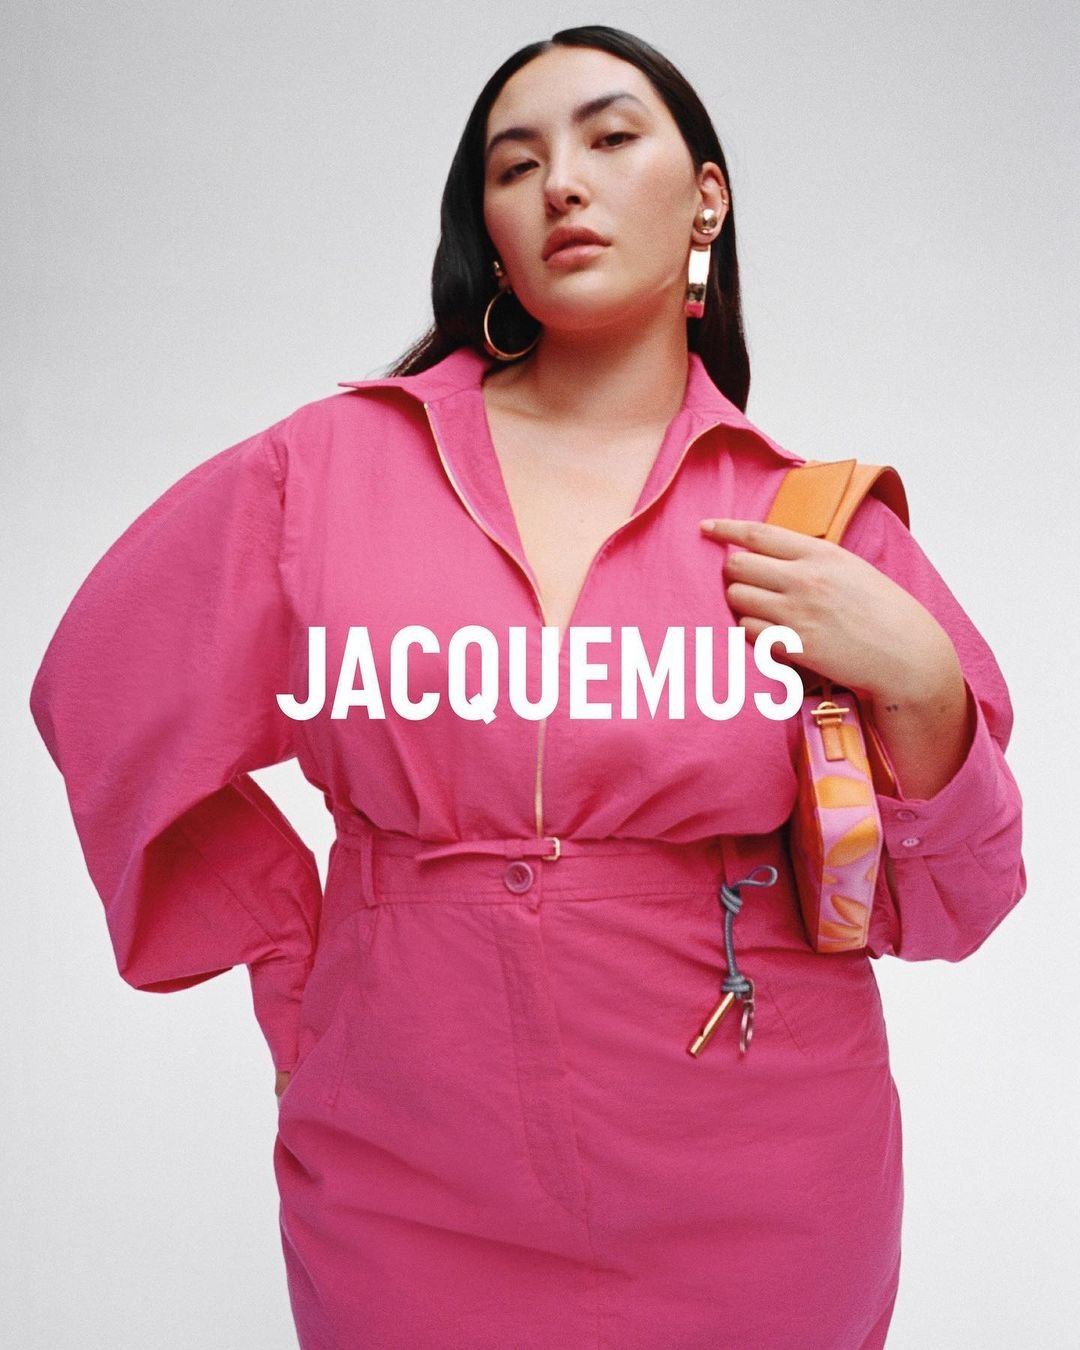 modelo - saia, camisa e bolsa pinks - pink - primavera verão - jacquemus - https://stealthelook.com.br